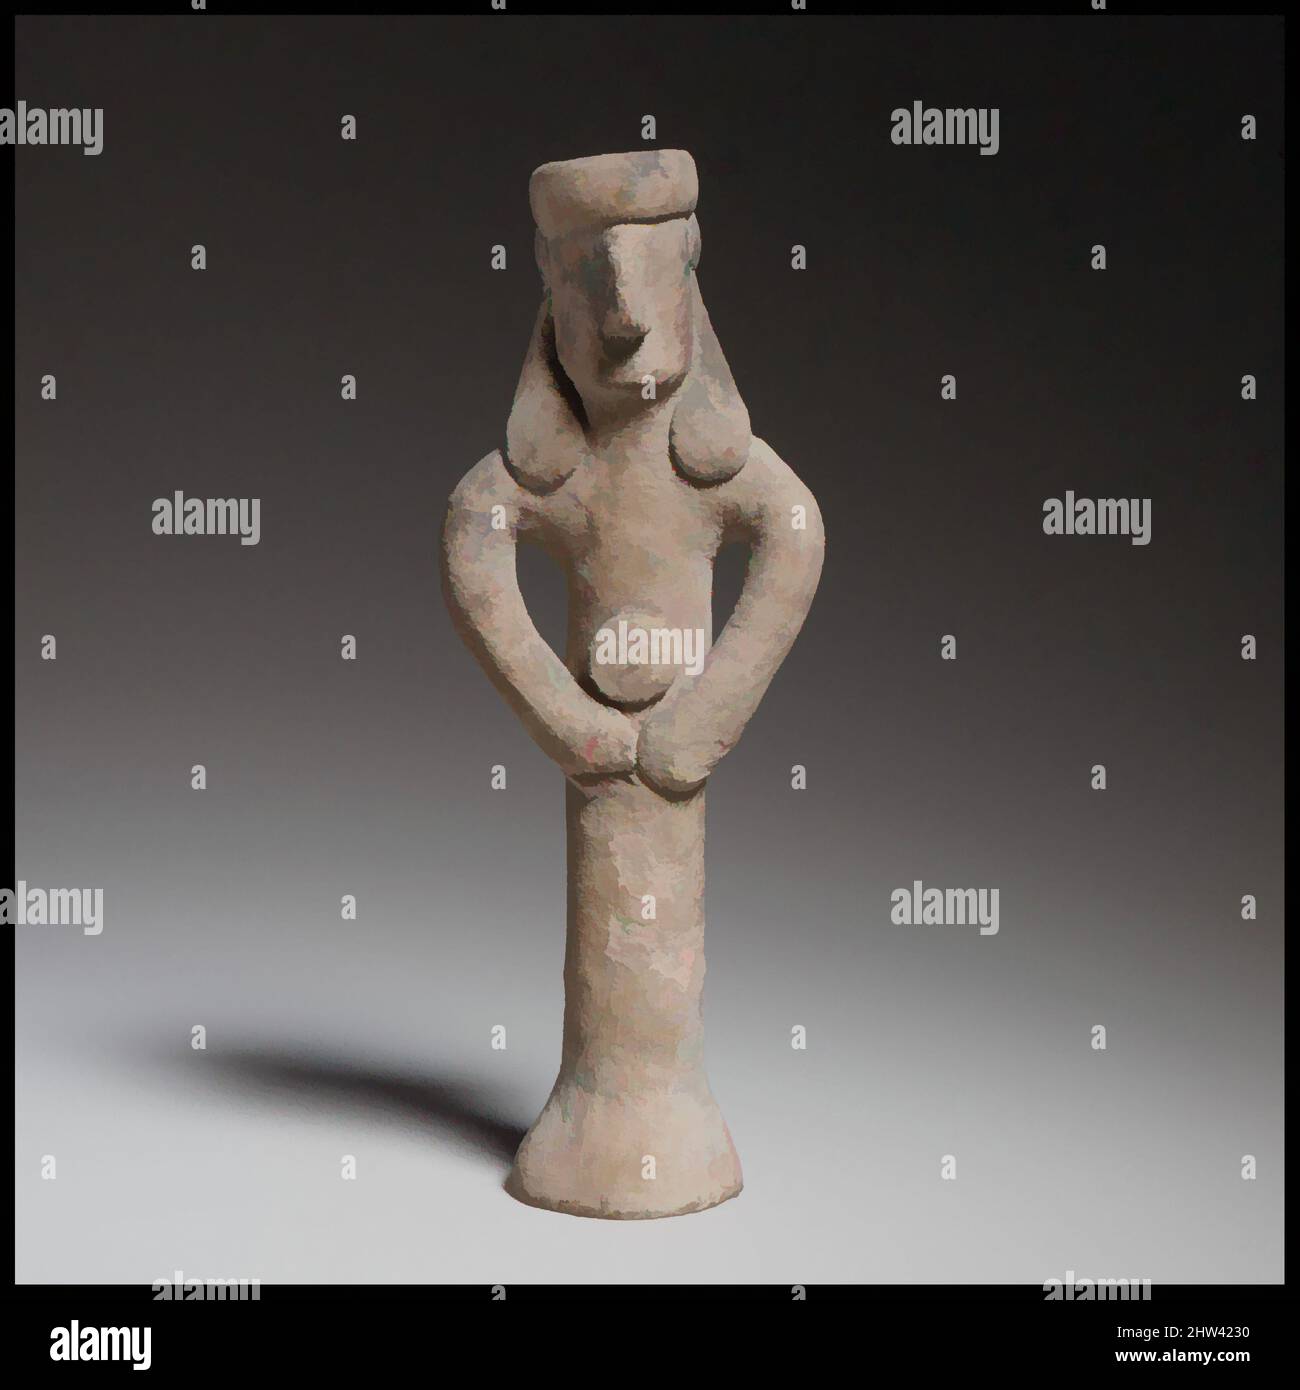 Art inspiré par la figure debout tenant un tambourin(?), Cypro-archaïque II, ca. 600–480 C.-B., chypriote, terre cuite; fait à la main, H. 5 15/16 po. (15,1 cm), terracottas, la figurine, de genre incertain, est faite à la main et solide, avec un corps cylindrique évasant. Les bras courber vers le bas, le, les œuvres classiques modernisées par Artotop avec un peu de modernité. Formes, couleur et valeur, impact visuel accrocheur sur l'art émotions par la liberté d'œuvres d'art d'une manière contemporaine. Un message intemporel qui cherche une nouvelle direction créative. Artistes qui se tournent vers le support numérique et créent le NFT Artotop Banque D'Images